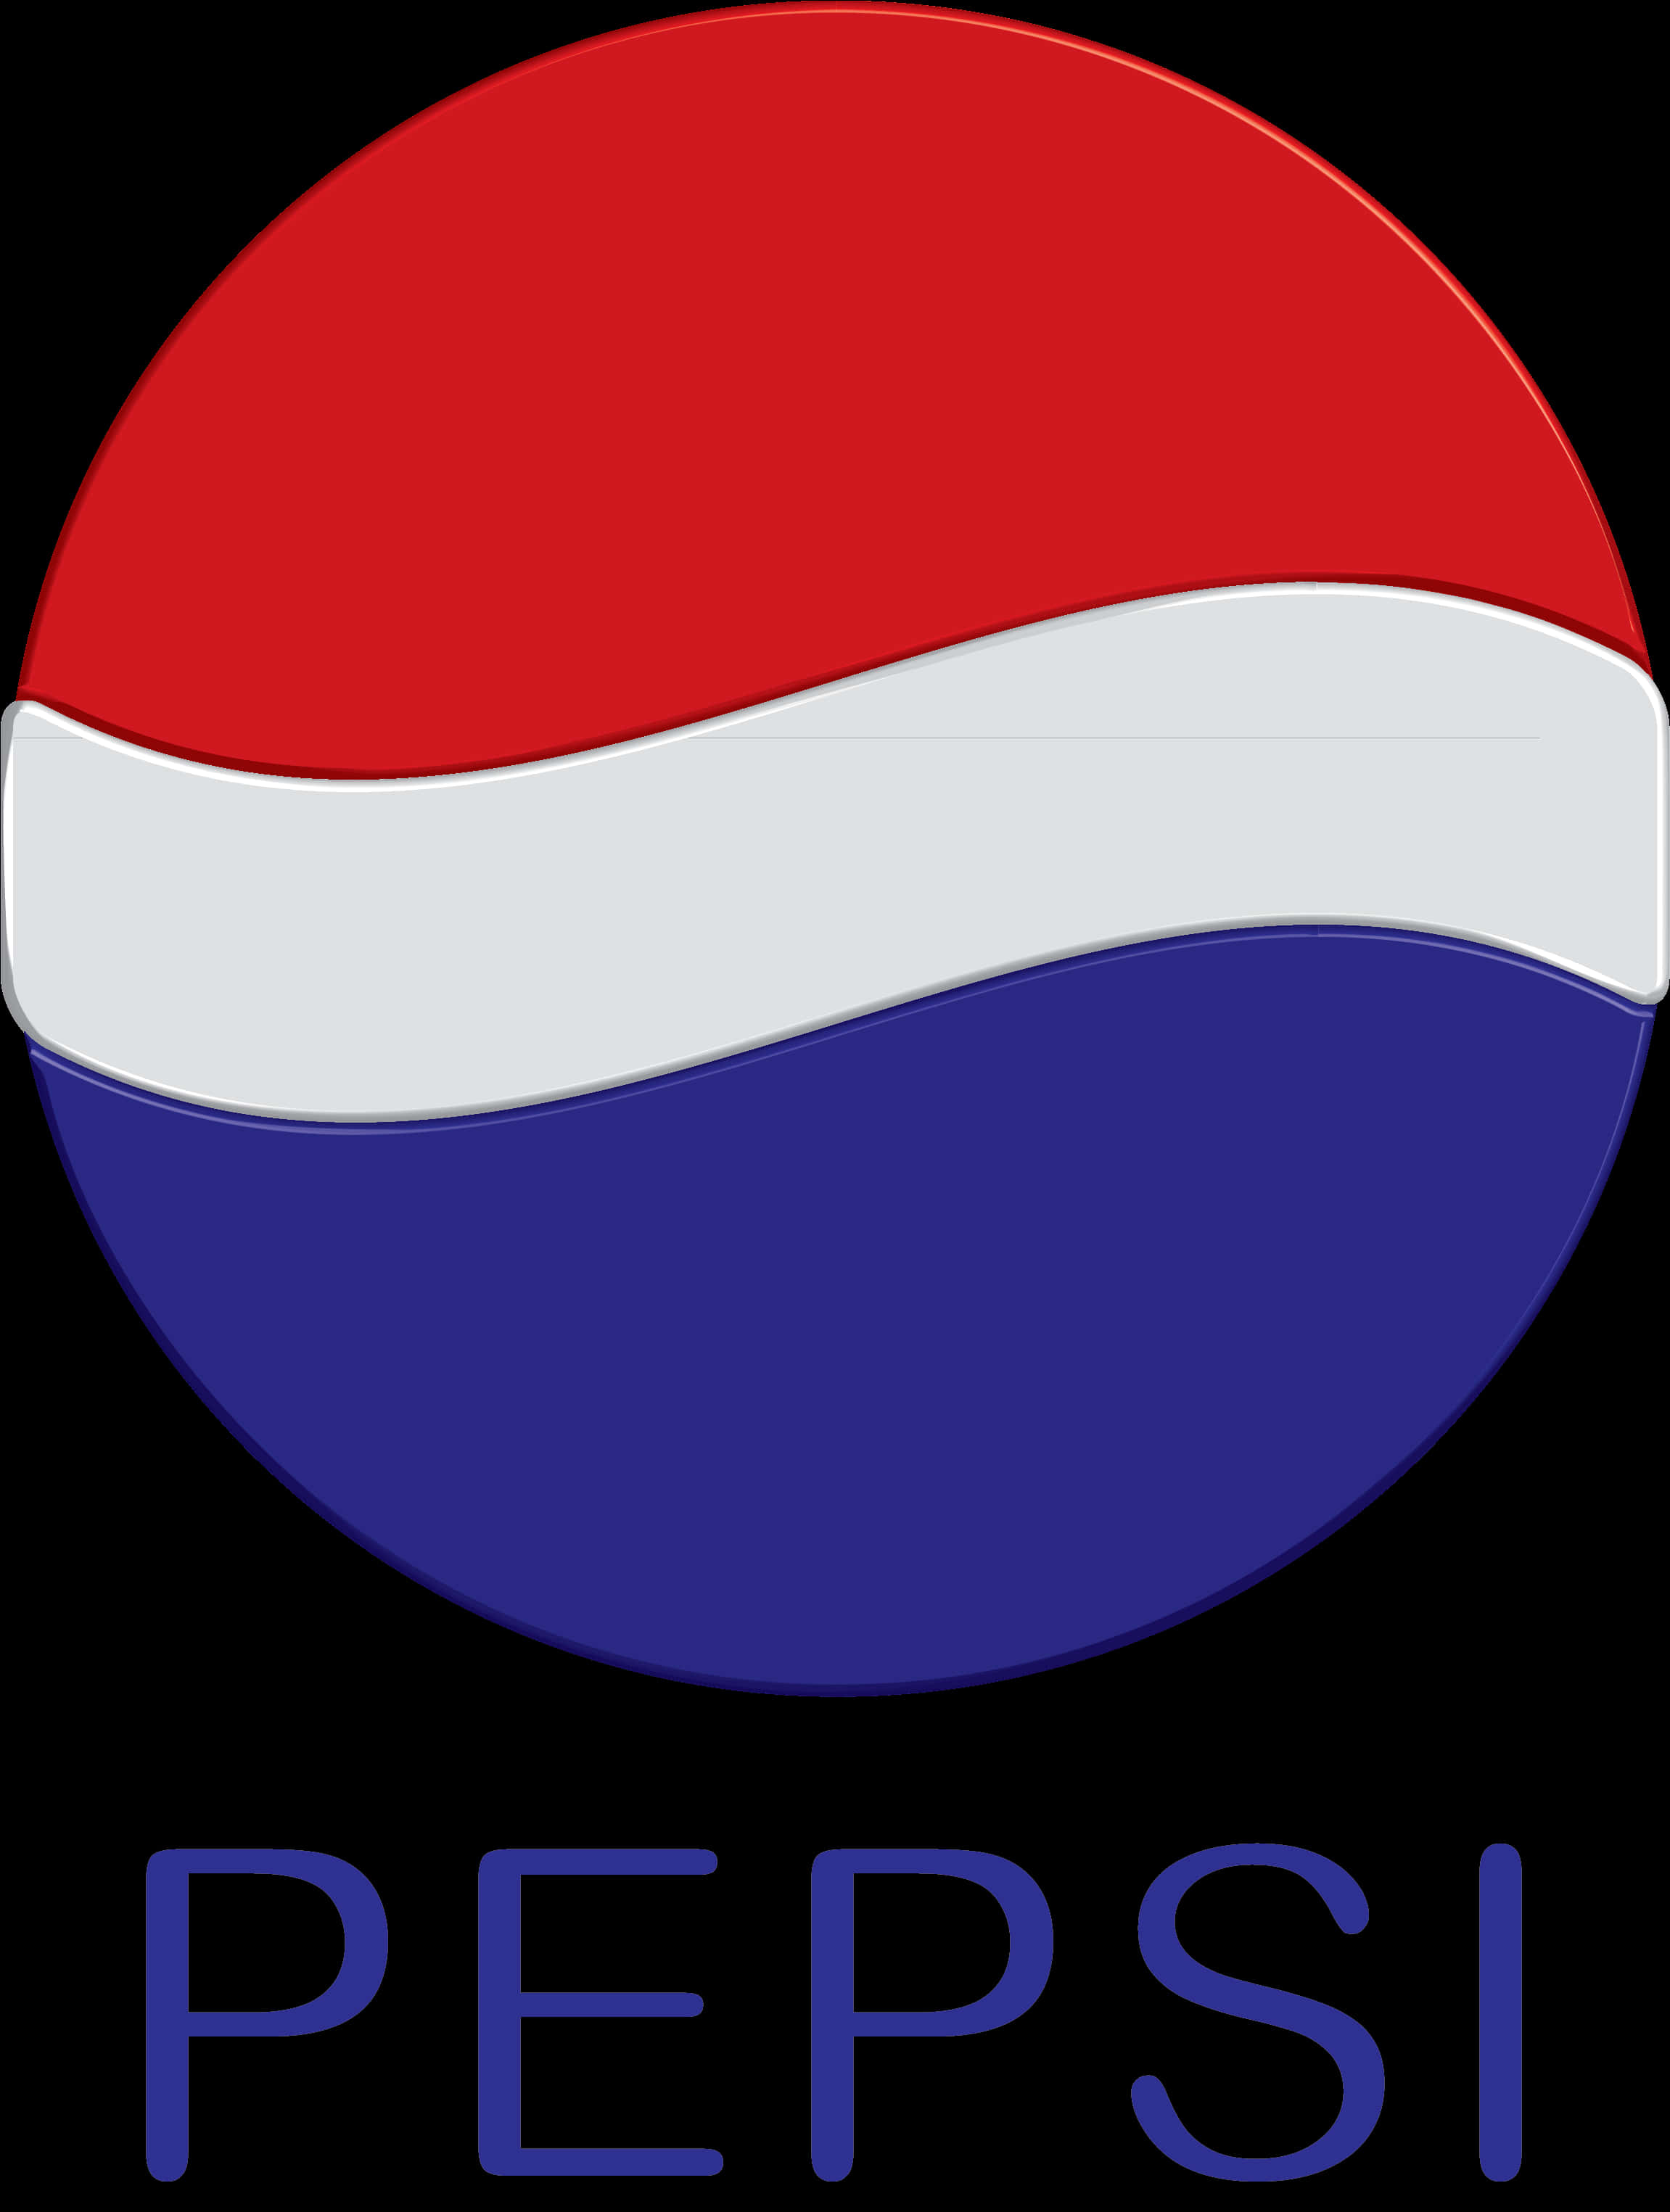 A Logo Of A Pepsi Company